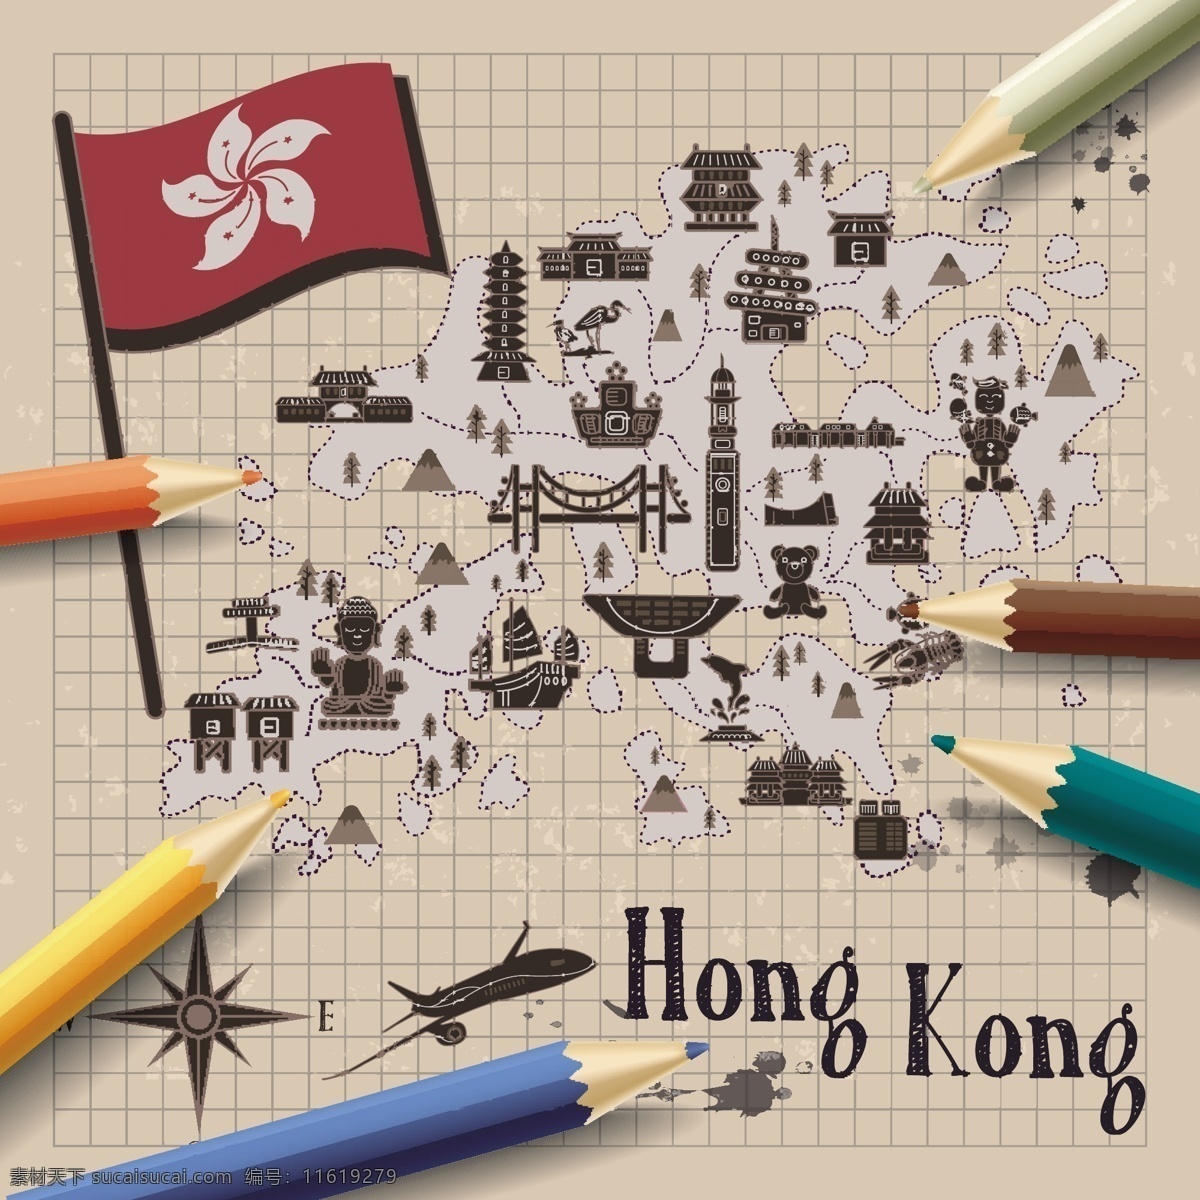 手绘 手绘地图 手绘路线图 香港旅行 旅行路线图 路线图 卡通地图 卡通路线图 香港路线图 旅游景点 扁平化地图 地图 灰色